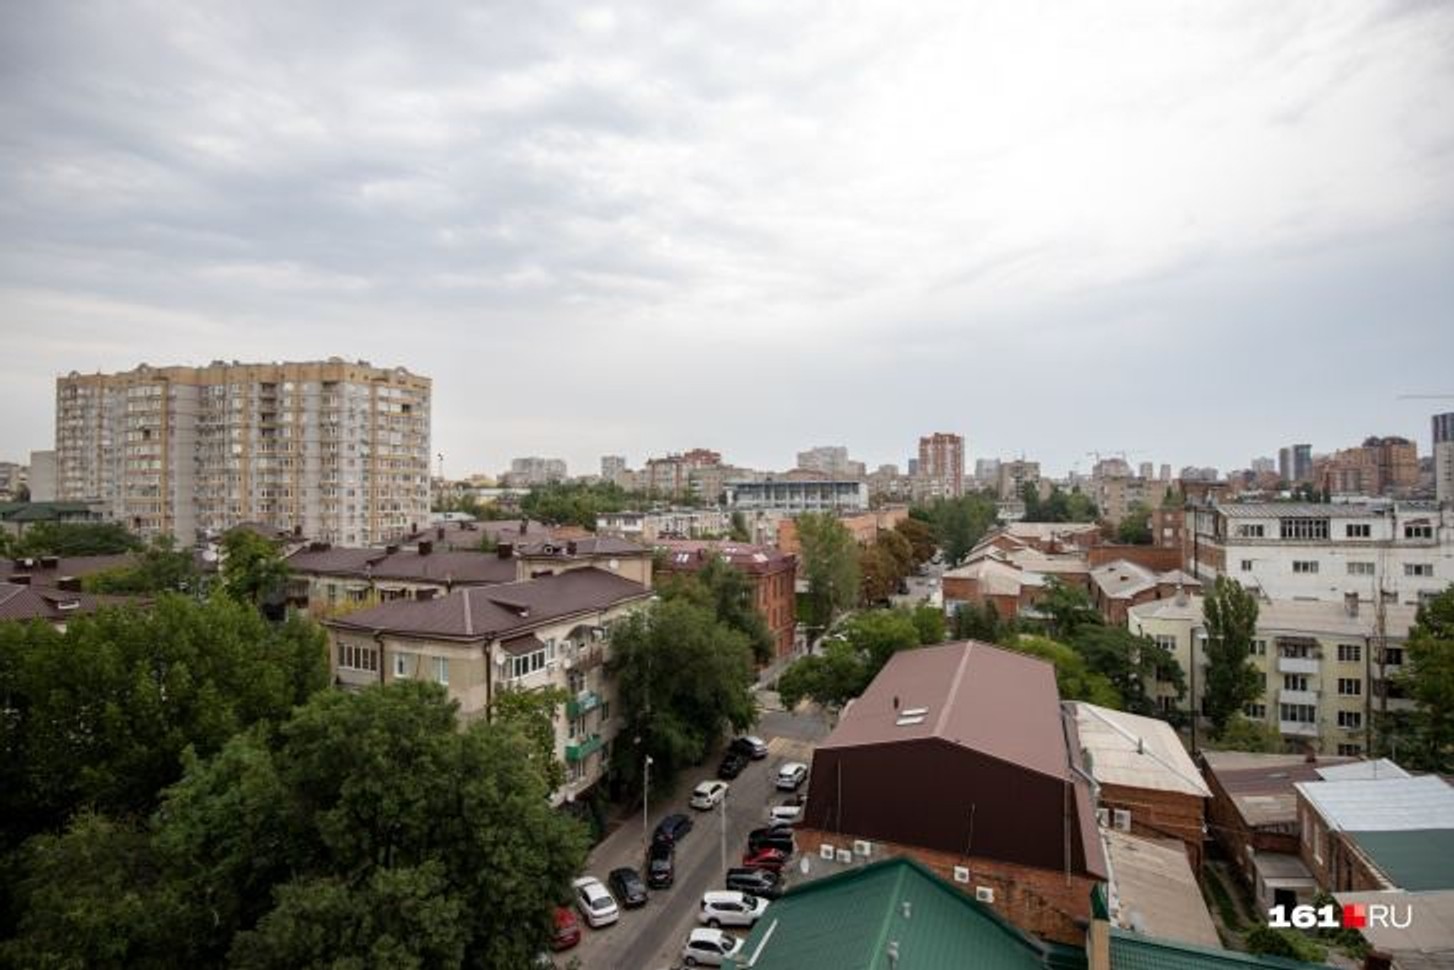 Жители Ростовской области сообщили о взрыве, очевидцы говорят о работе ПВО в Таганроге